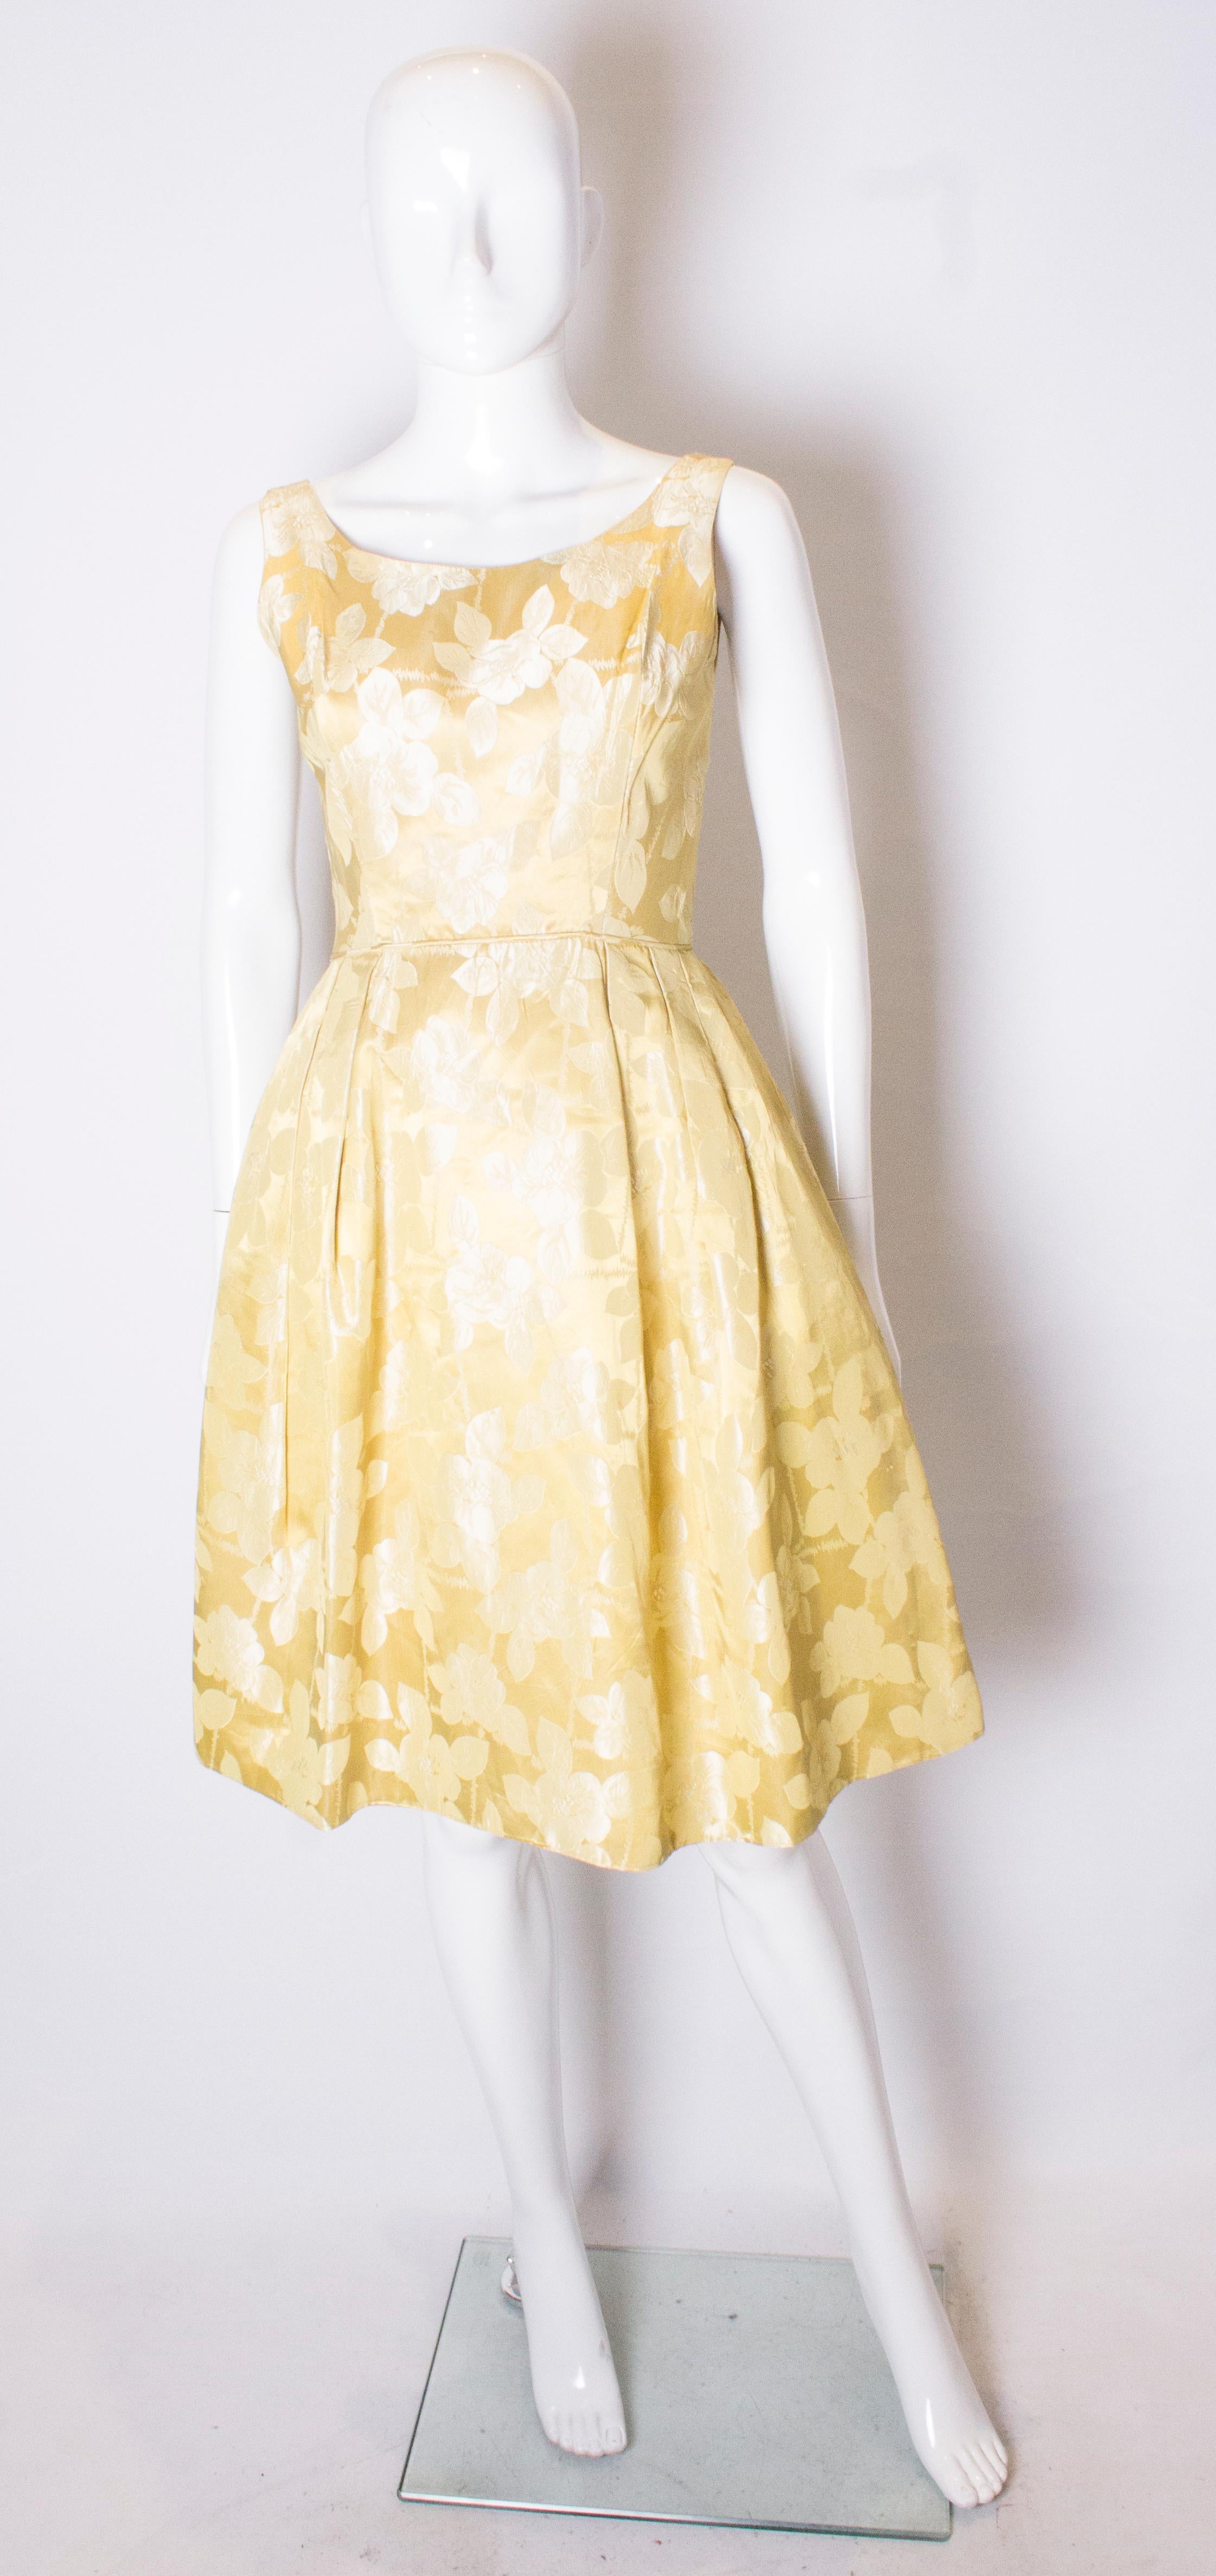 Ein schickes Vintage-Cocktailkleid in einer hübschen gelb/goldenen Farbe. Das Kleid hat einen Rundhalsausschnitt, vorne und hinten mit kleinen Raffungen an der Taille. Es ist vollständig gefüttert, hat einen zentralen Reißverschluss am Rücken und